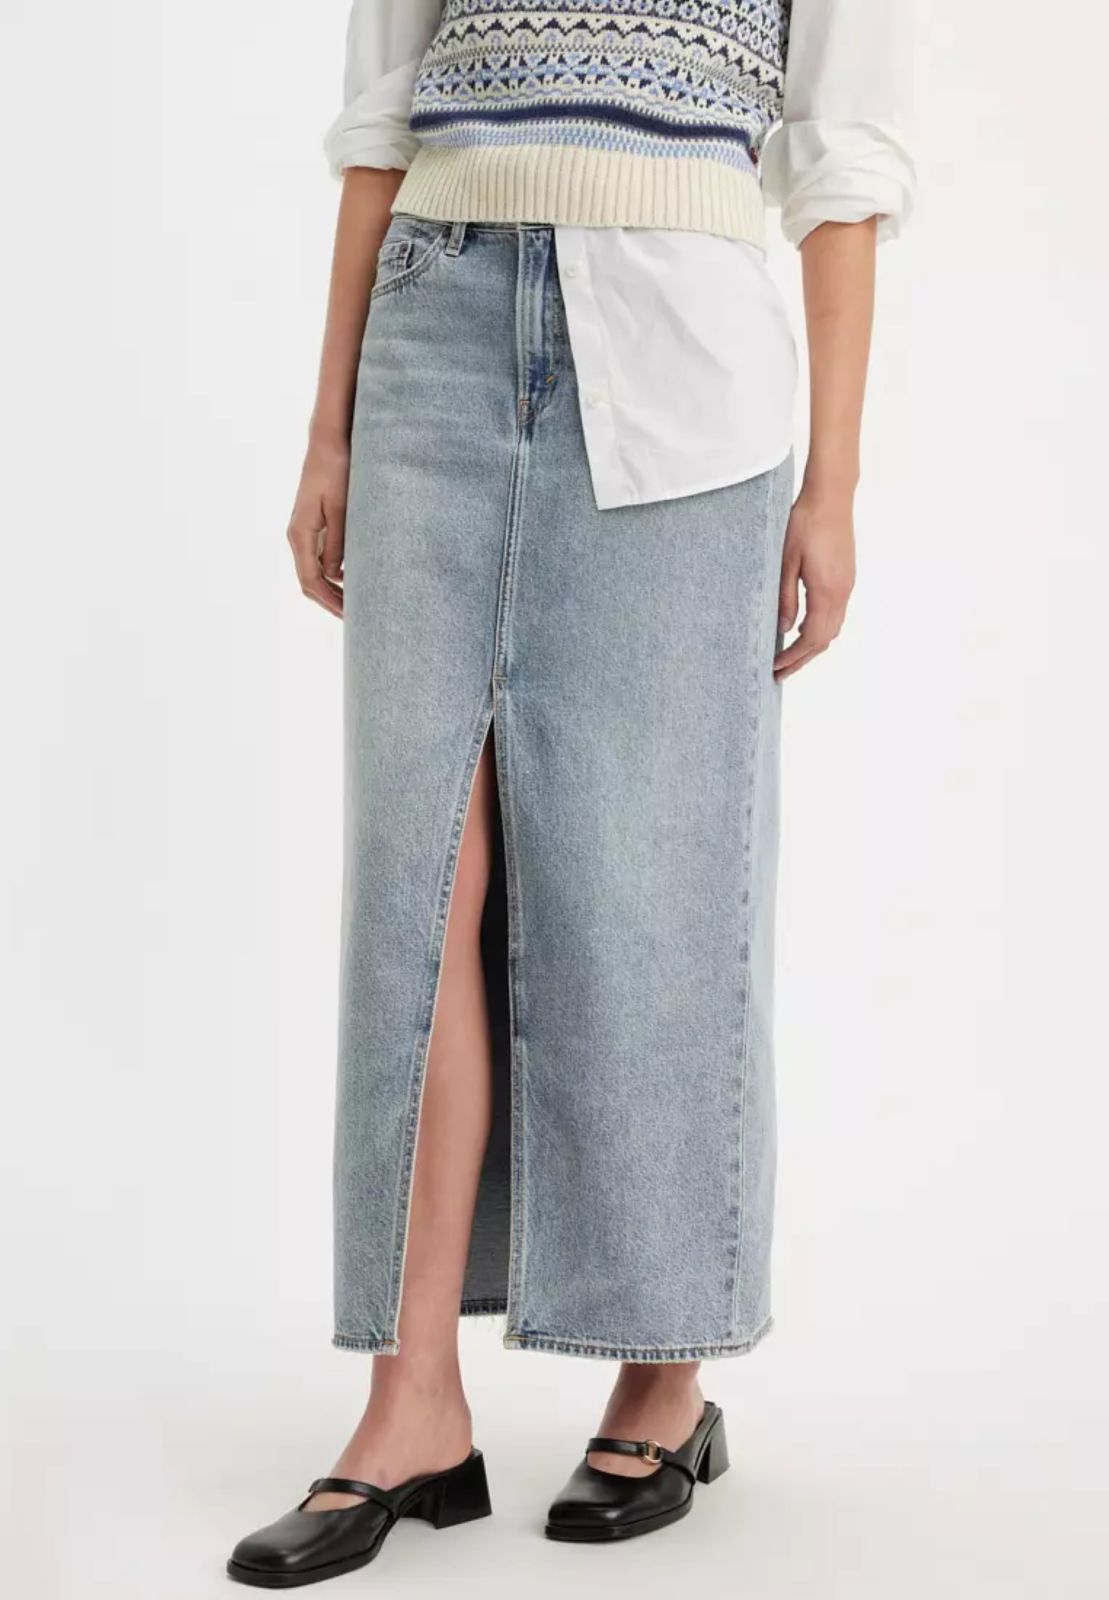  חצאית מקסי ג'ינס עם שסע של LEVIS